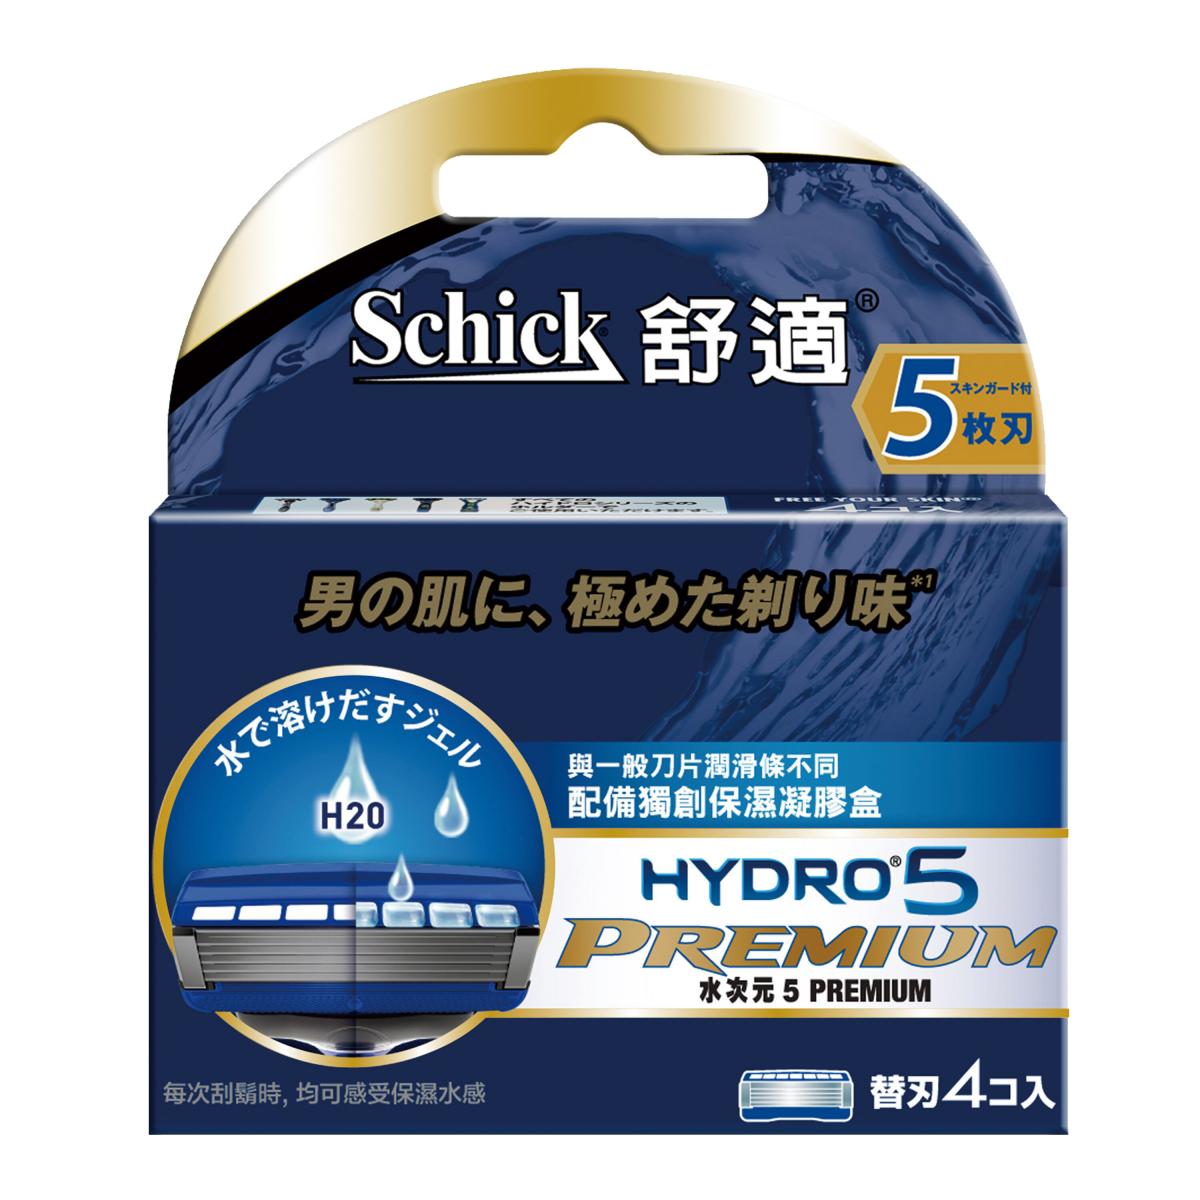 Hydro5 Premium Refill 4s(New Upgrade)